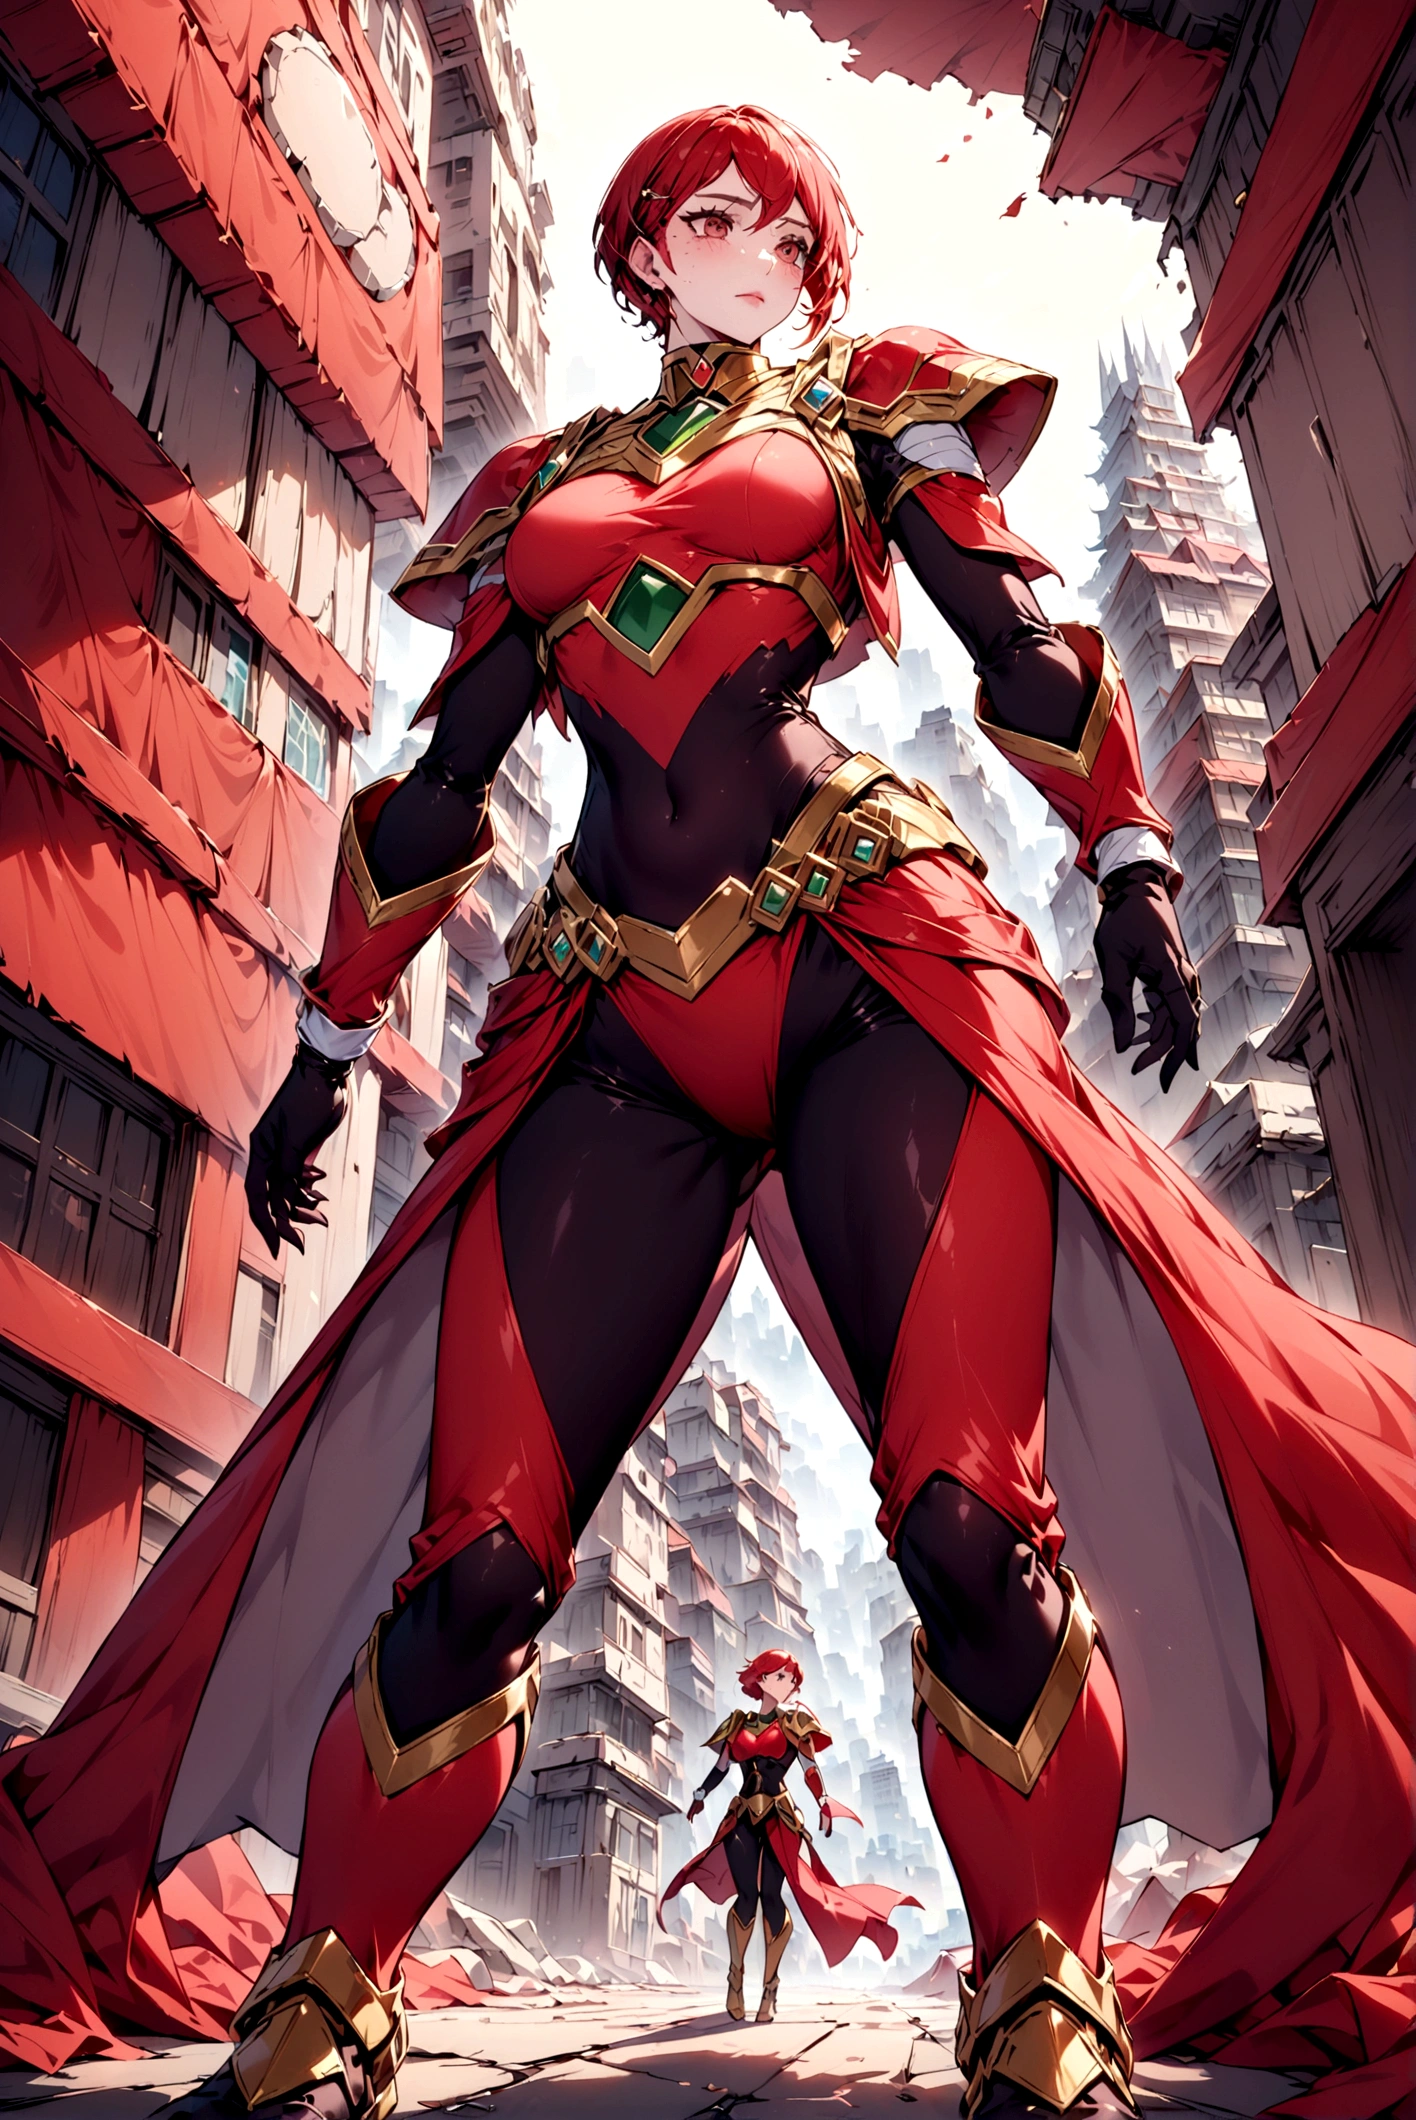 Персонаж может быть создан с дизайном, похожим на красного Могучего Рейнджера с опустошенным городом позади. 